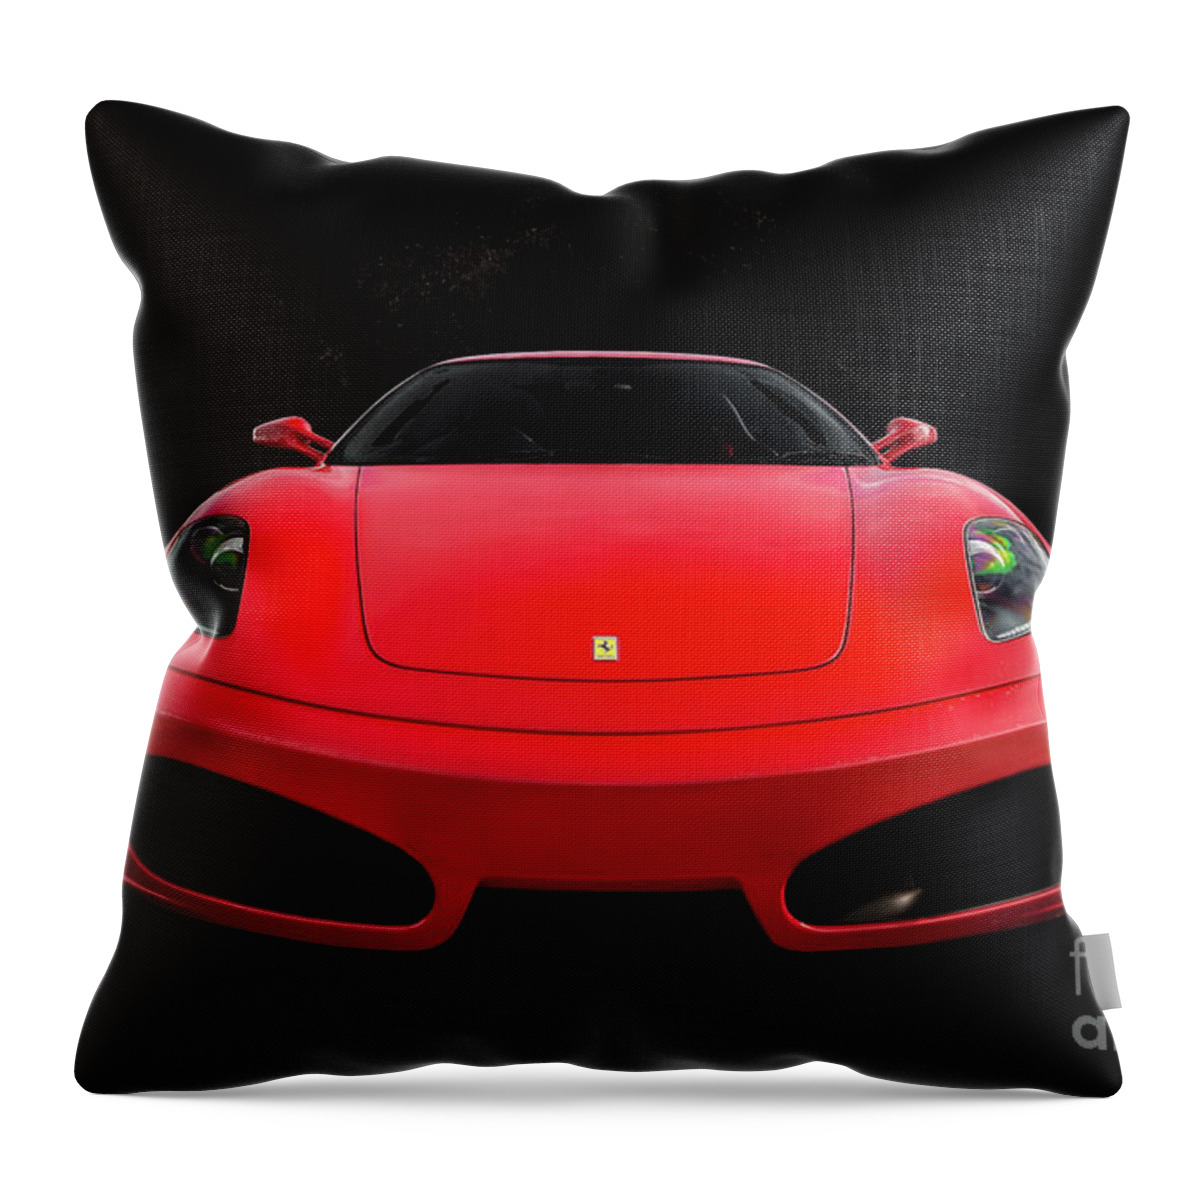 Ferrari Throw Pillow featuring the photograph Ferrari F430 by Adrian Evans